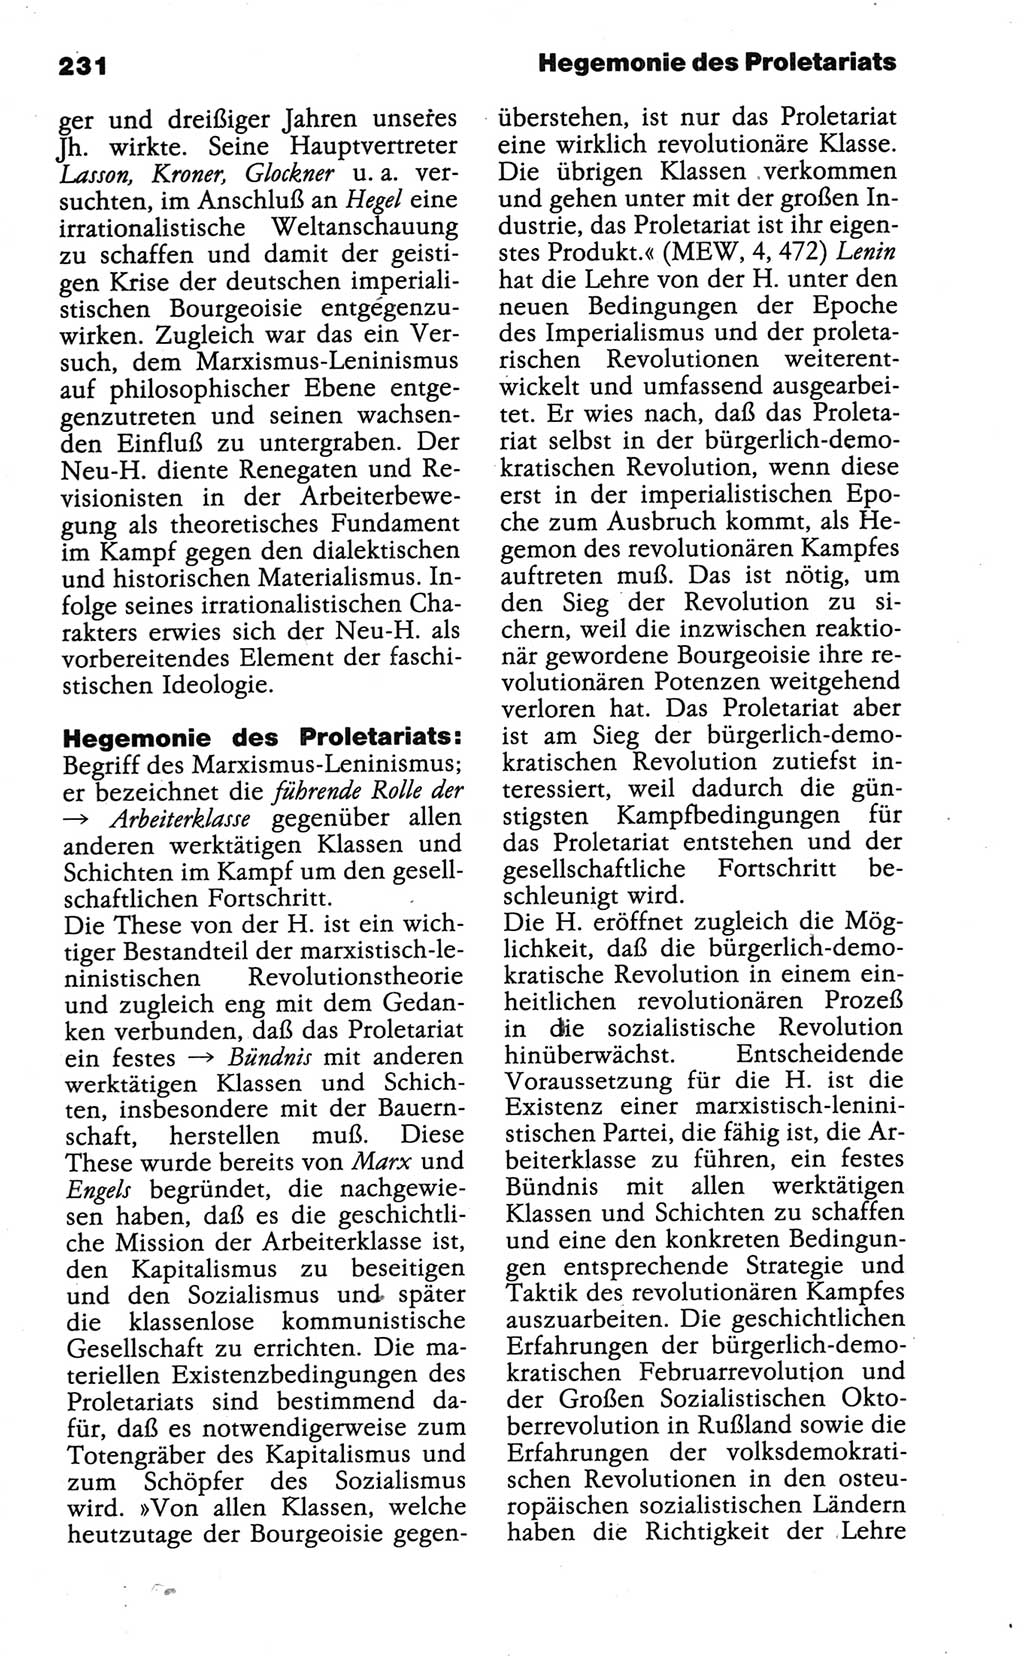 Wörterbuch der marxistisch-leninistischen Philosophie [Deutsche Demokratische Republik (DDR)] 1986, Seite 231 (Wb. ML Phil. DDR 1986, S. 231)